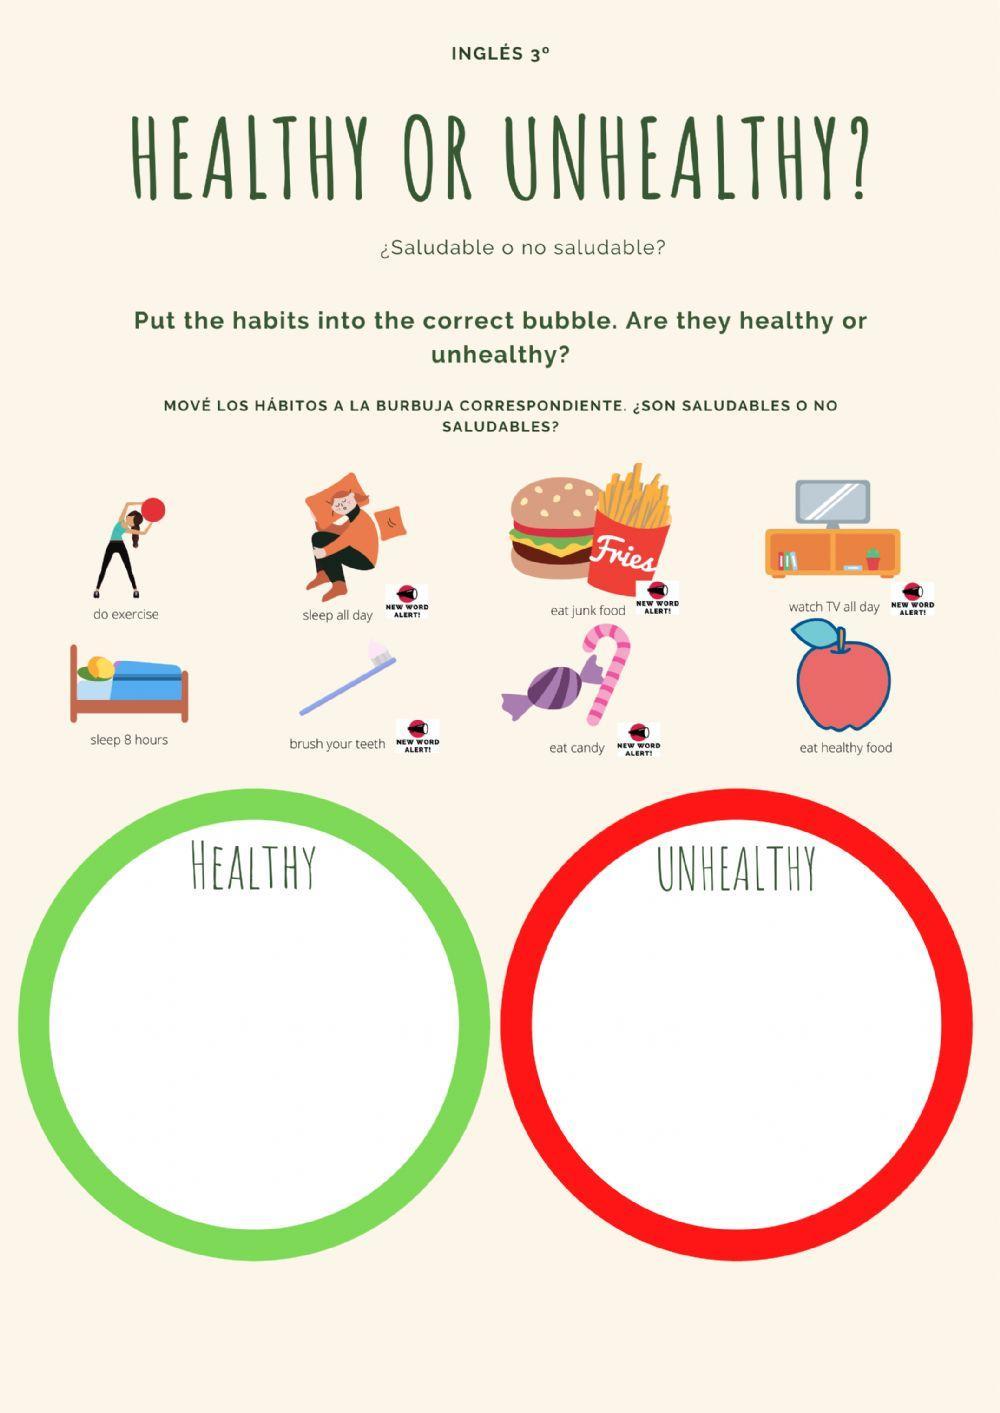 Healthy or unhealthy?